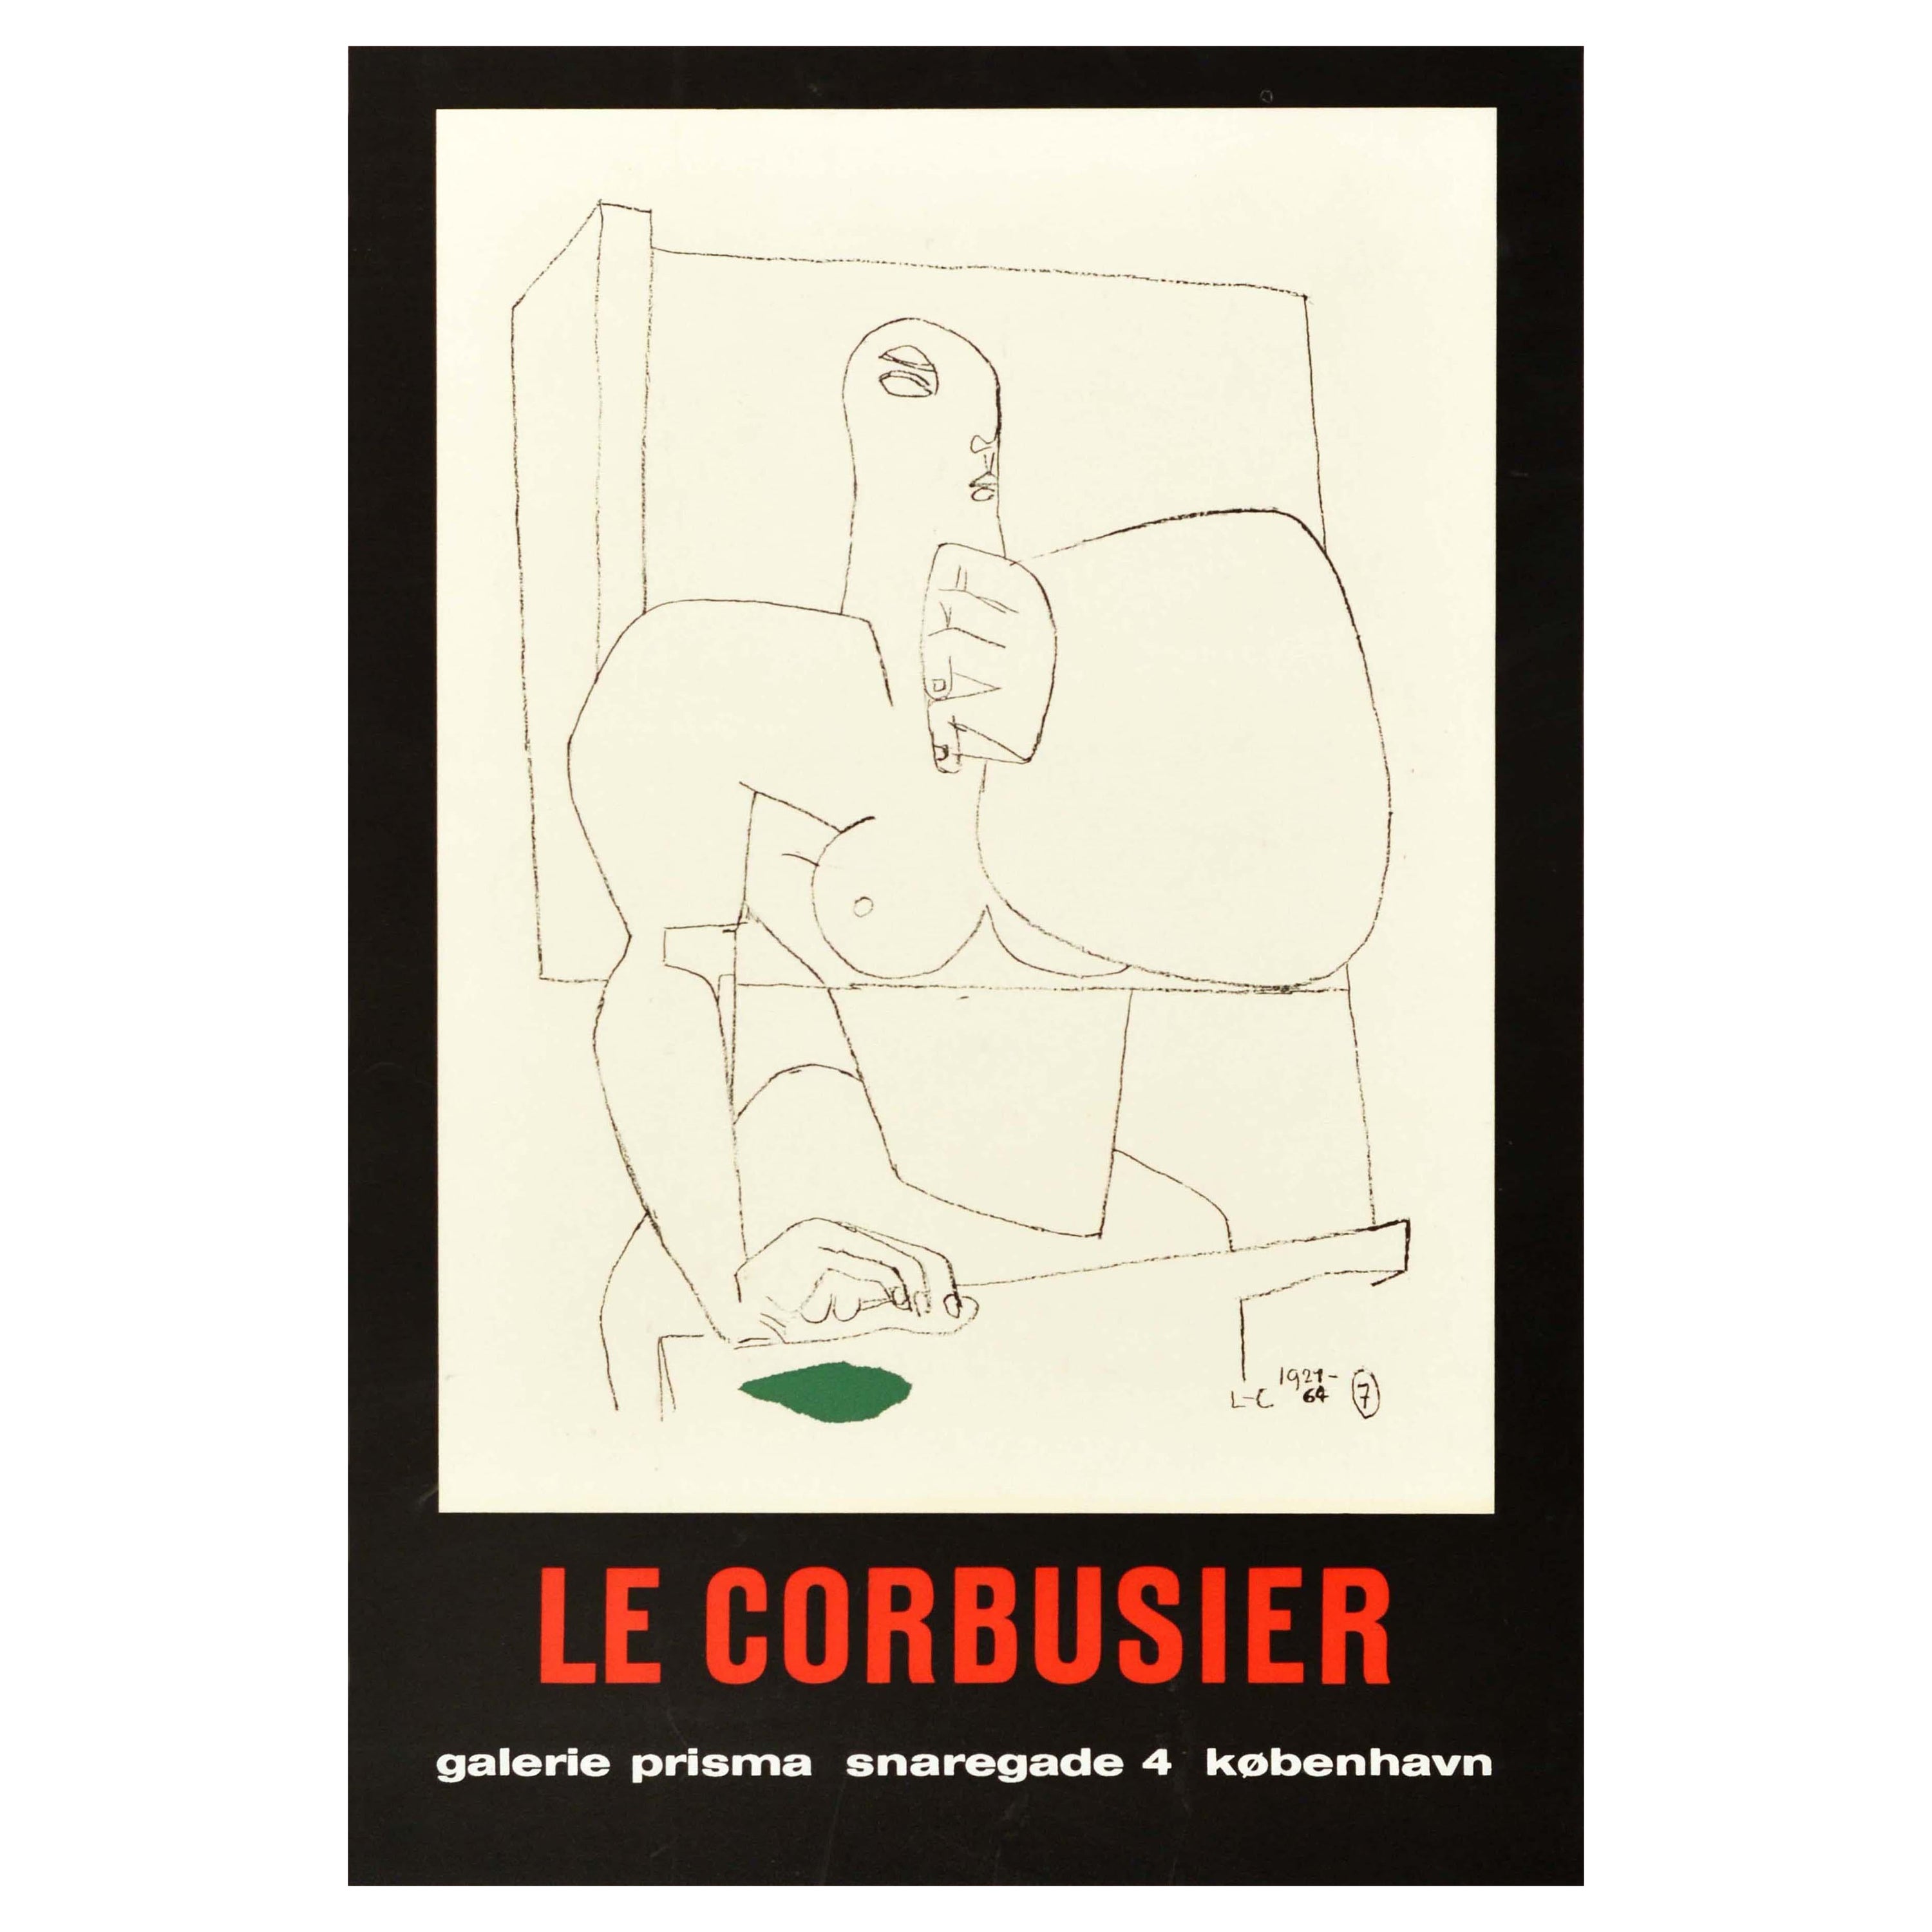 Original Vintage Art Exhibition Poster Le Corbusier Copenhagen Modernist Design